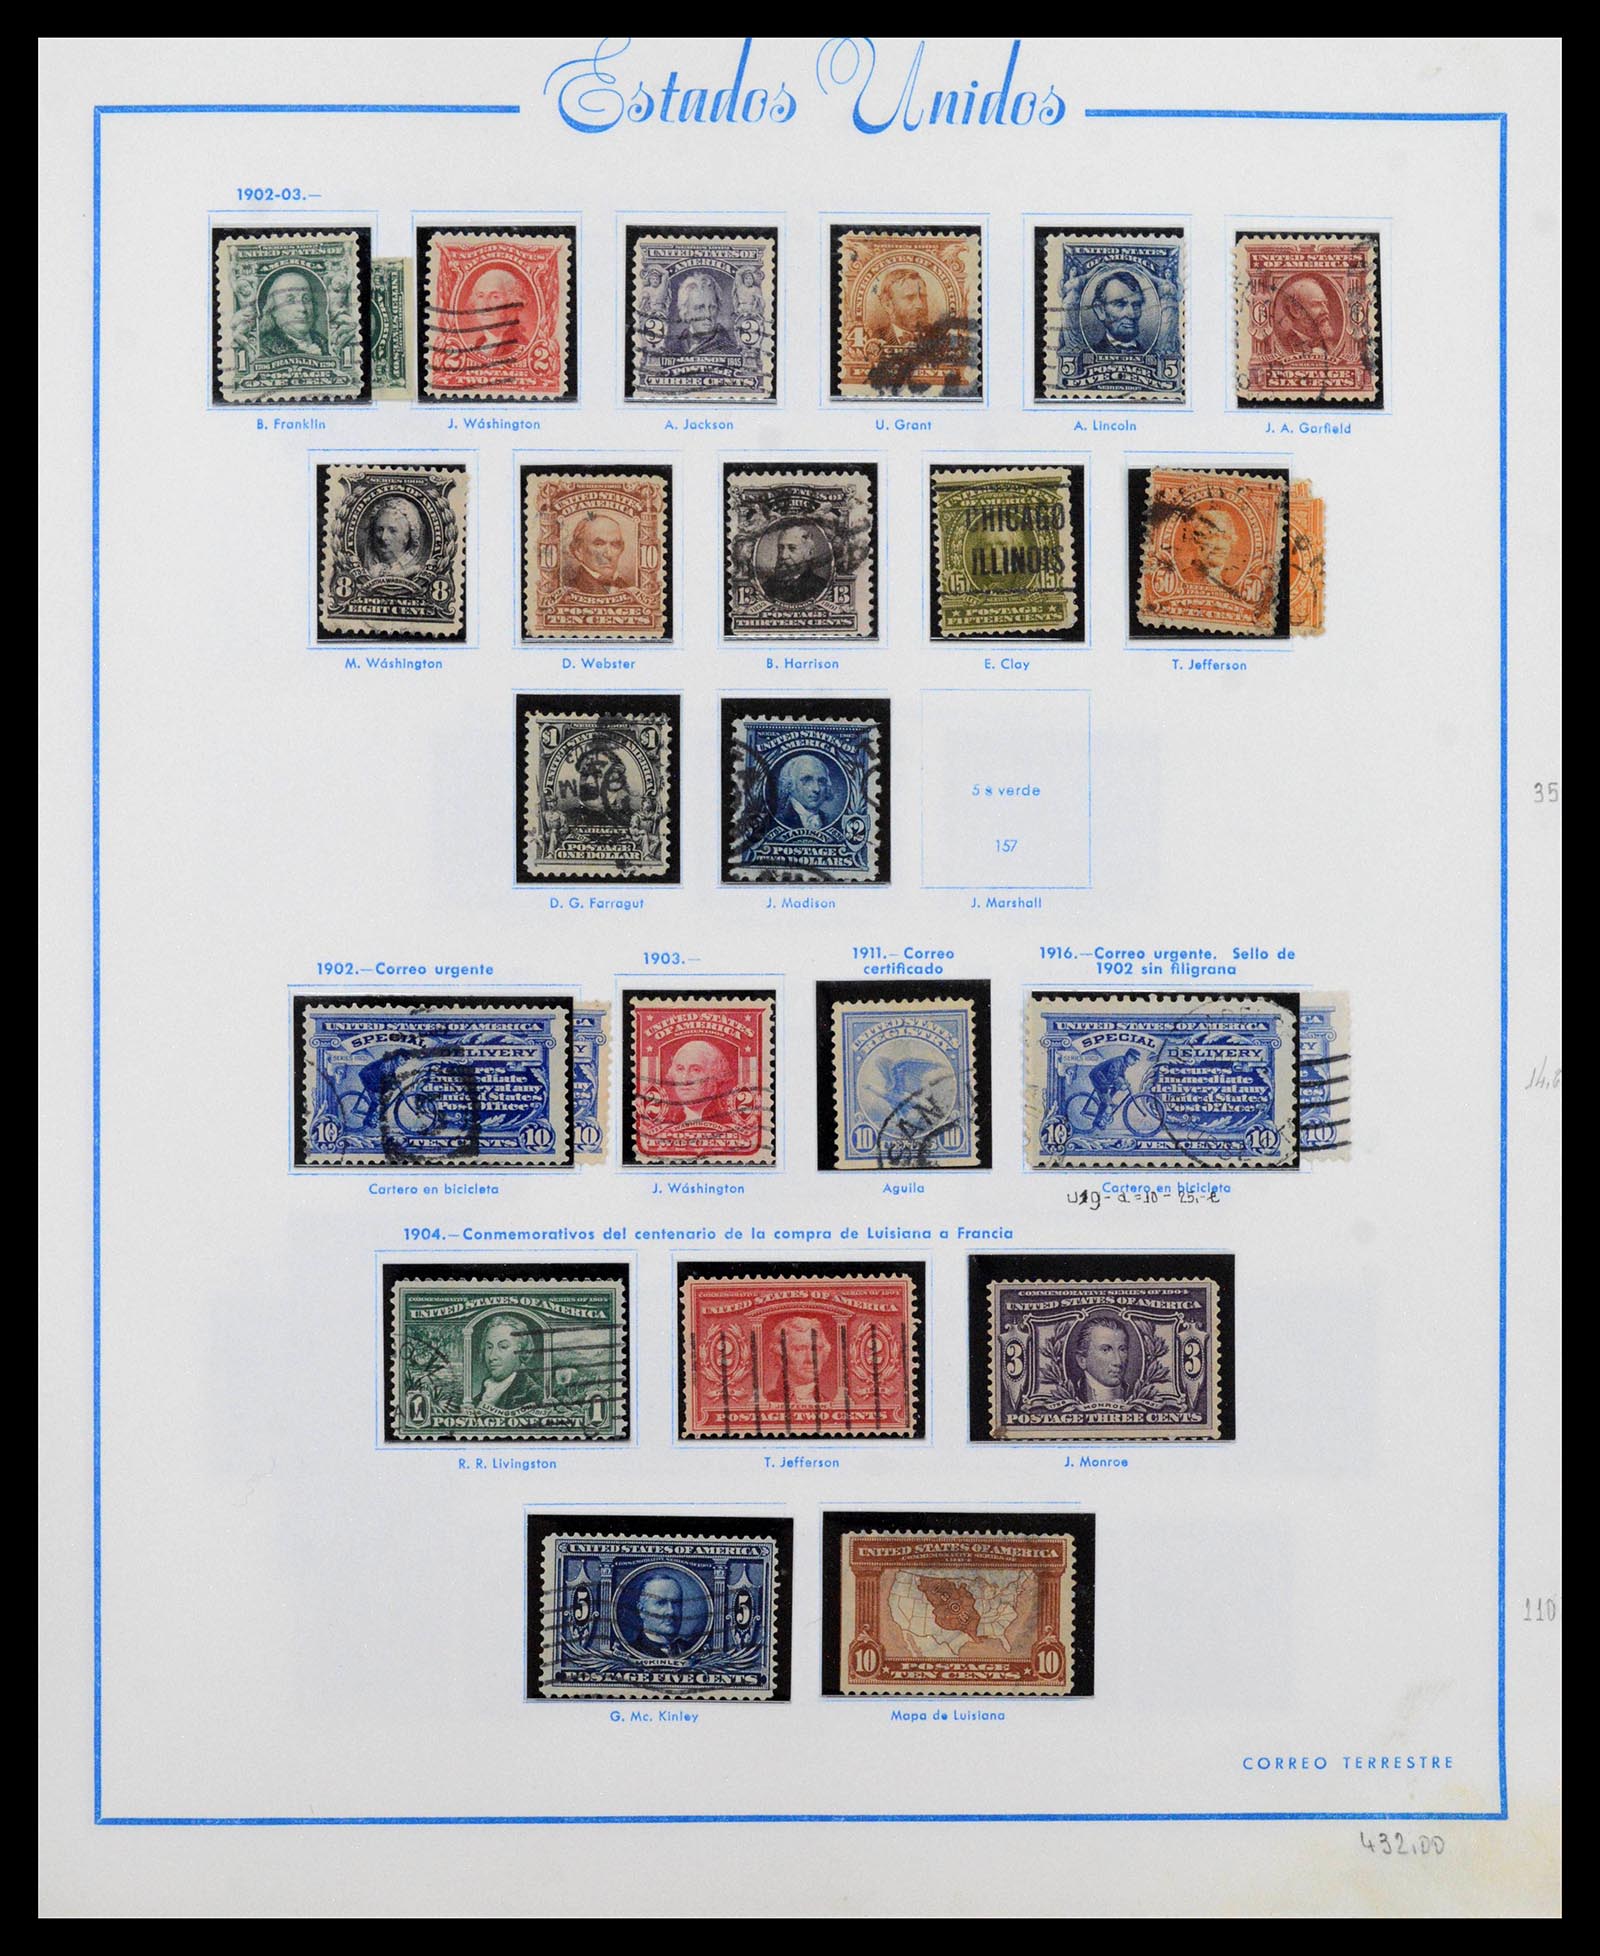 39190 0009 - Stamp collection 39190 USA 1851-1975.